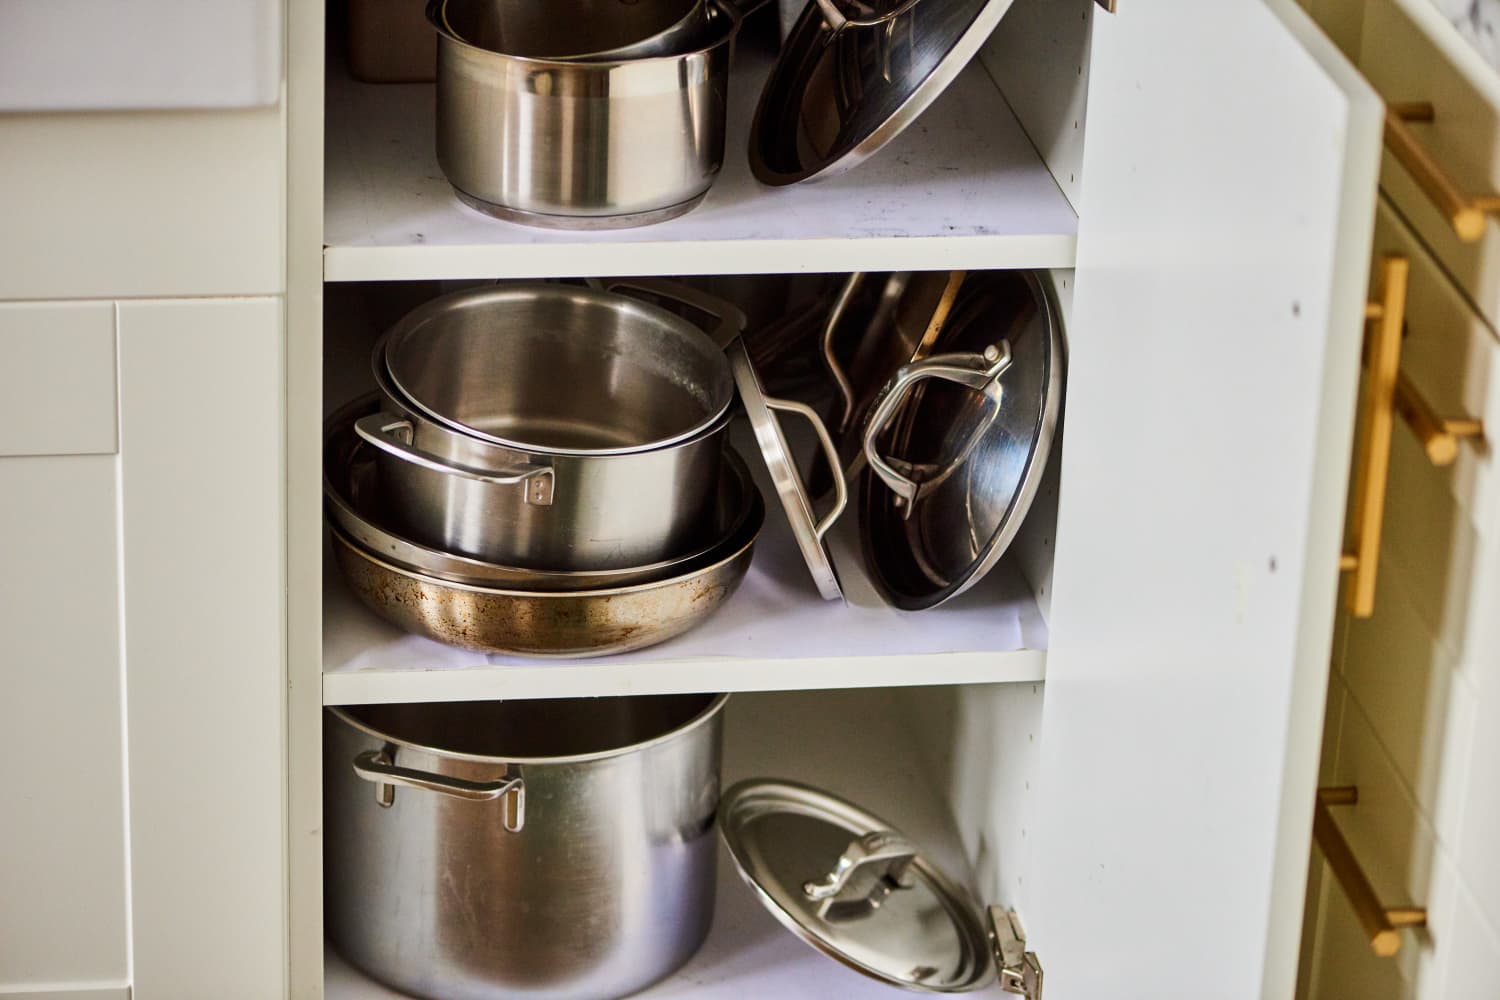 Хранение кастрюль, сковородок, крышек на кухне: размещение посуды с учётом её доступности на небольшой кухне